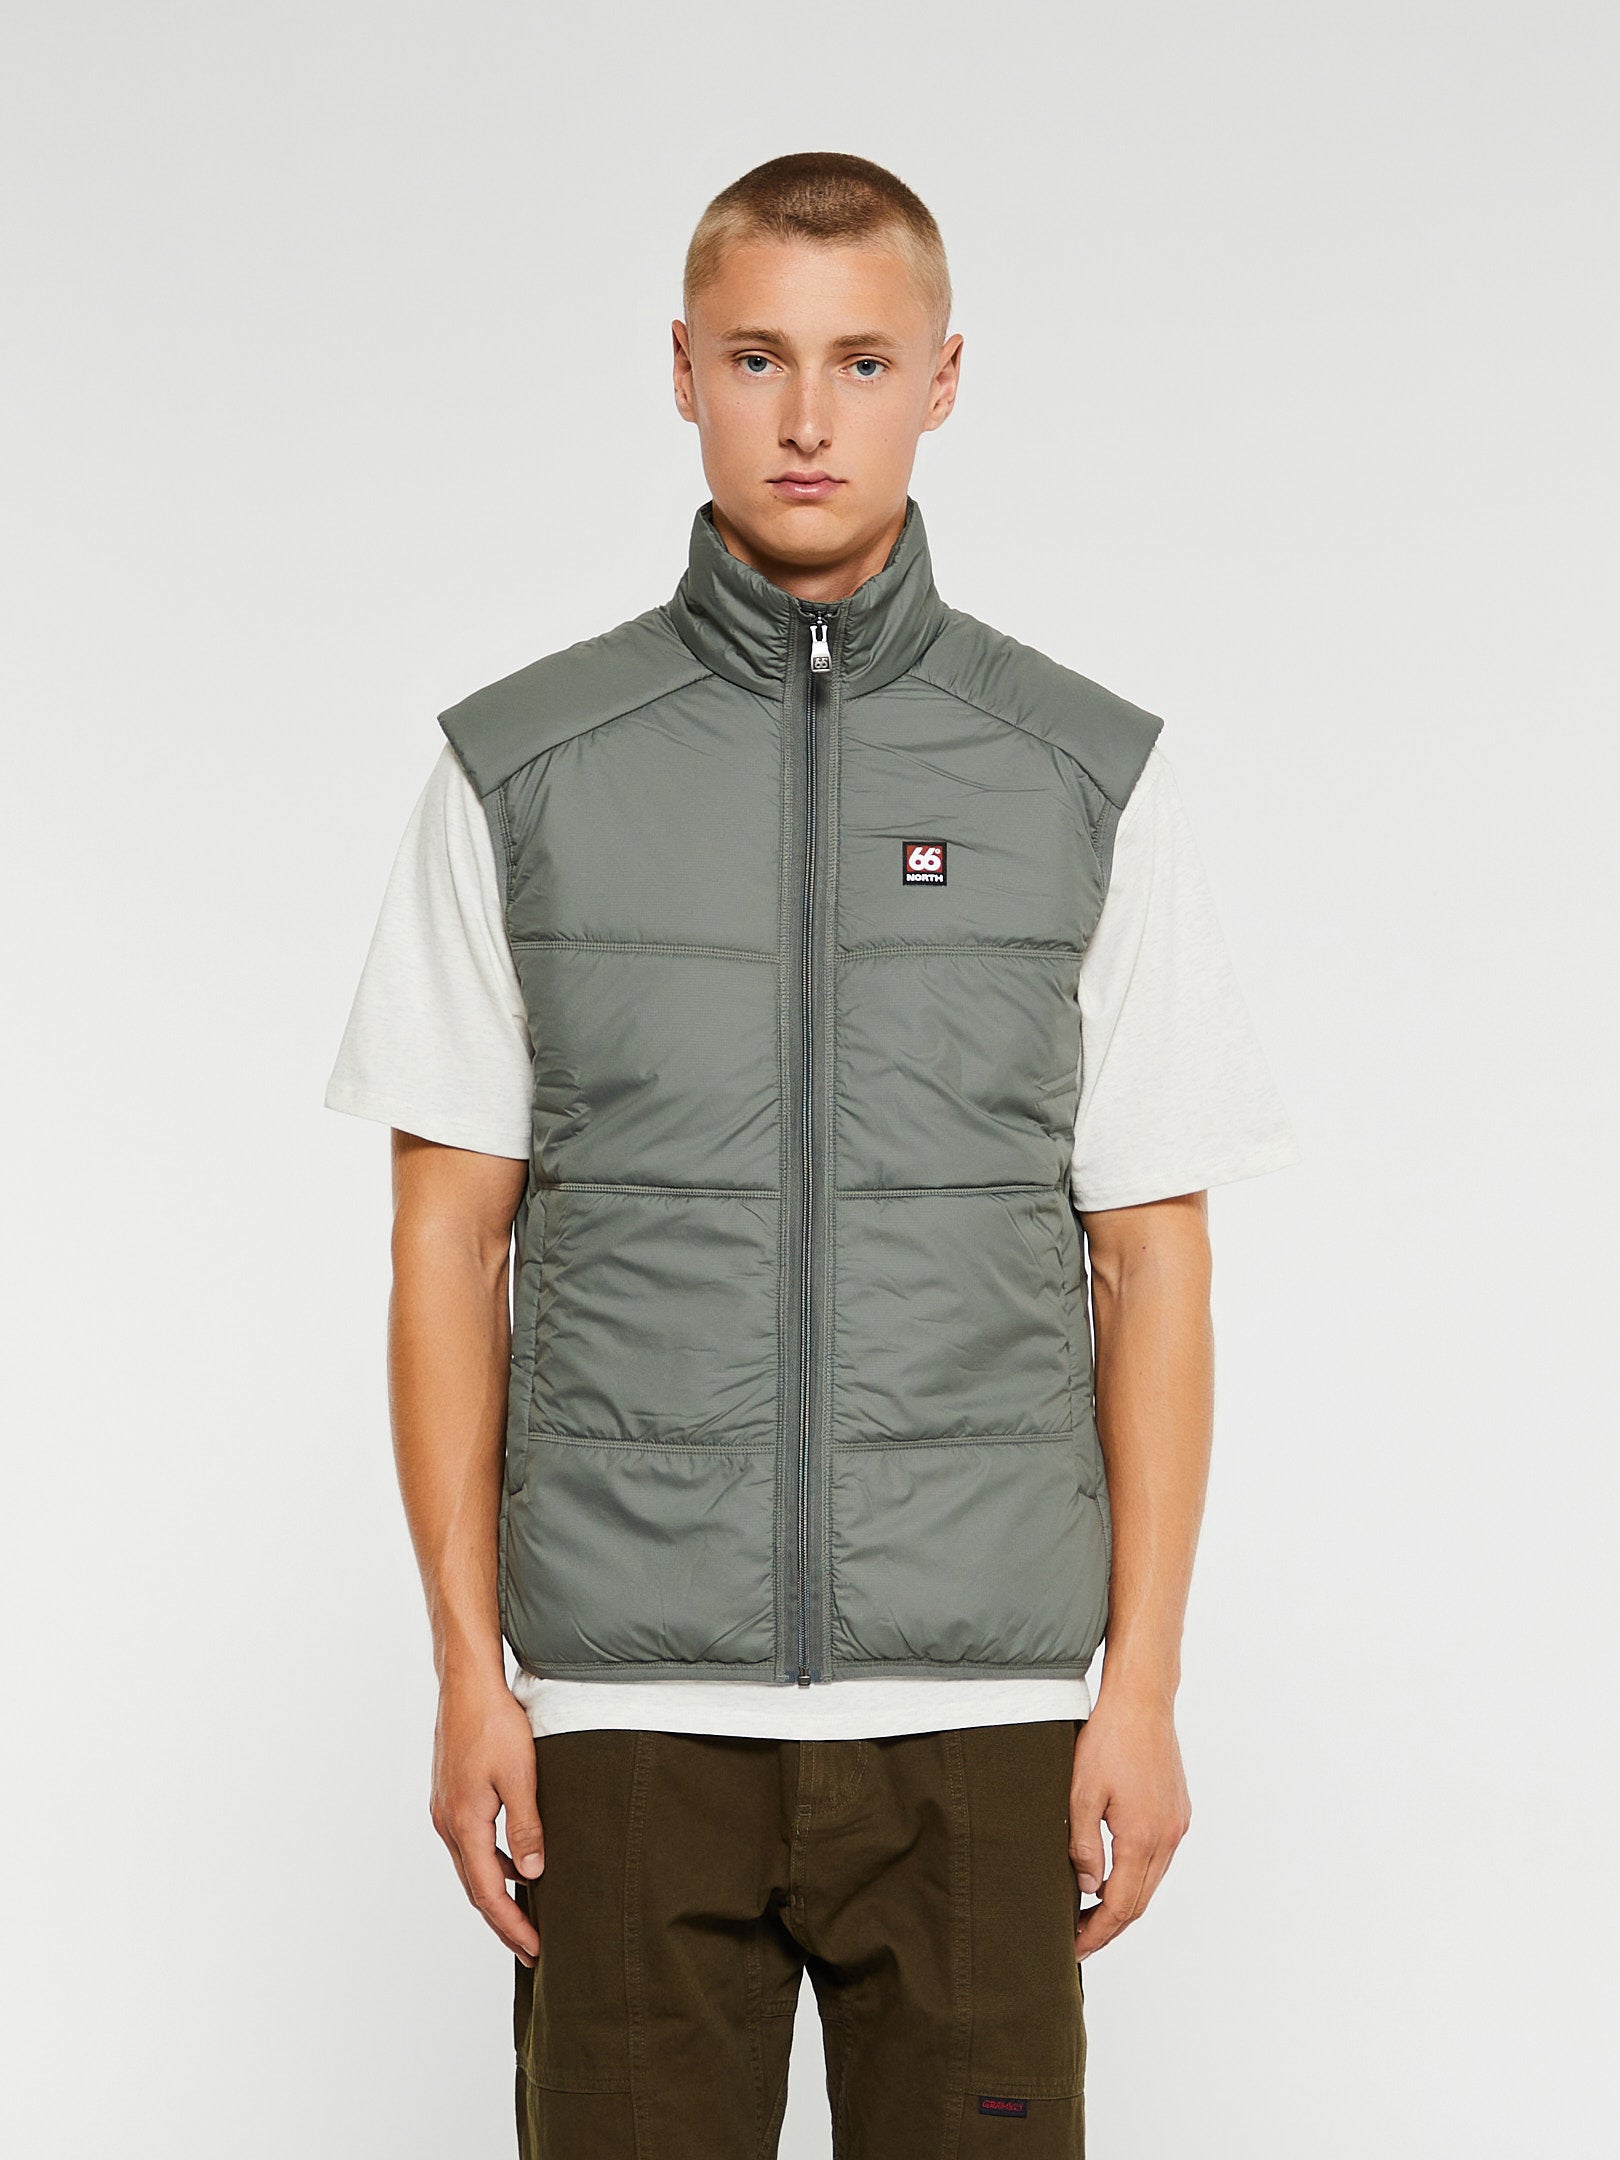 Jackets stoy & – Coats